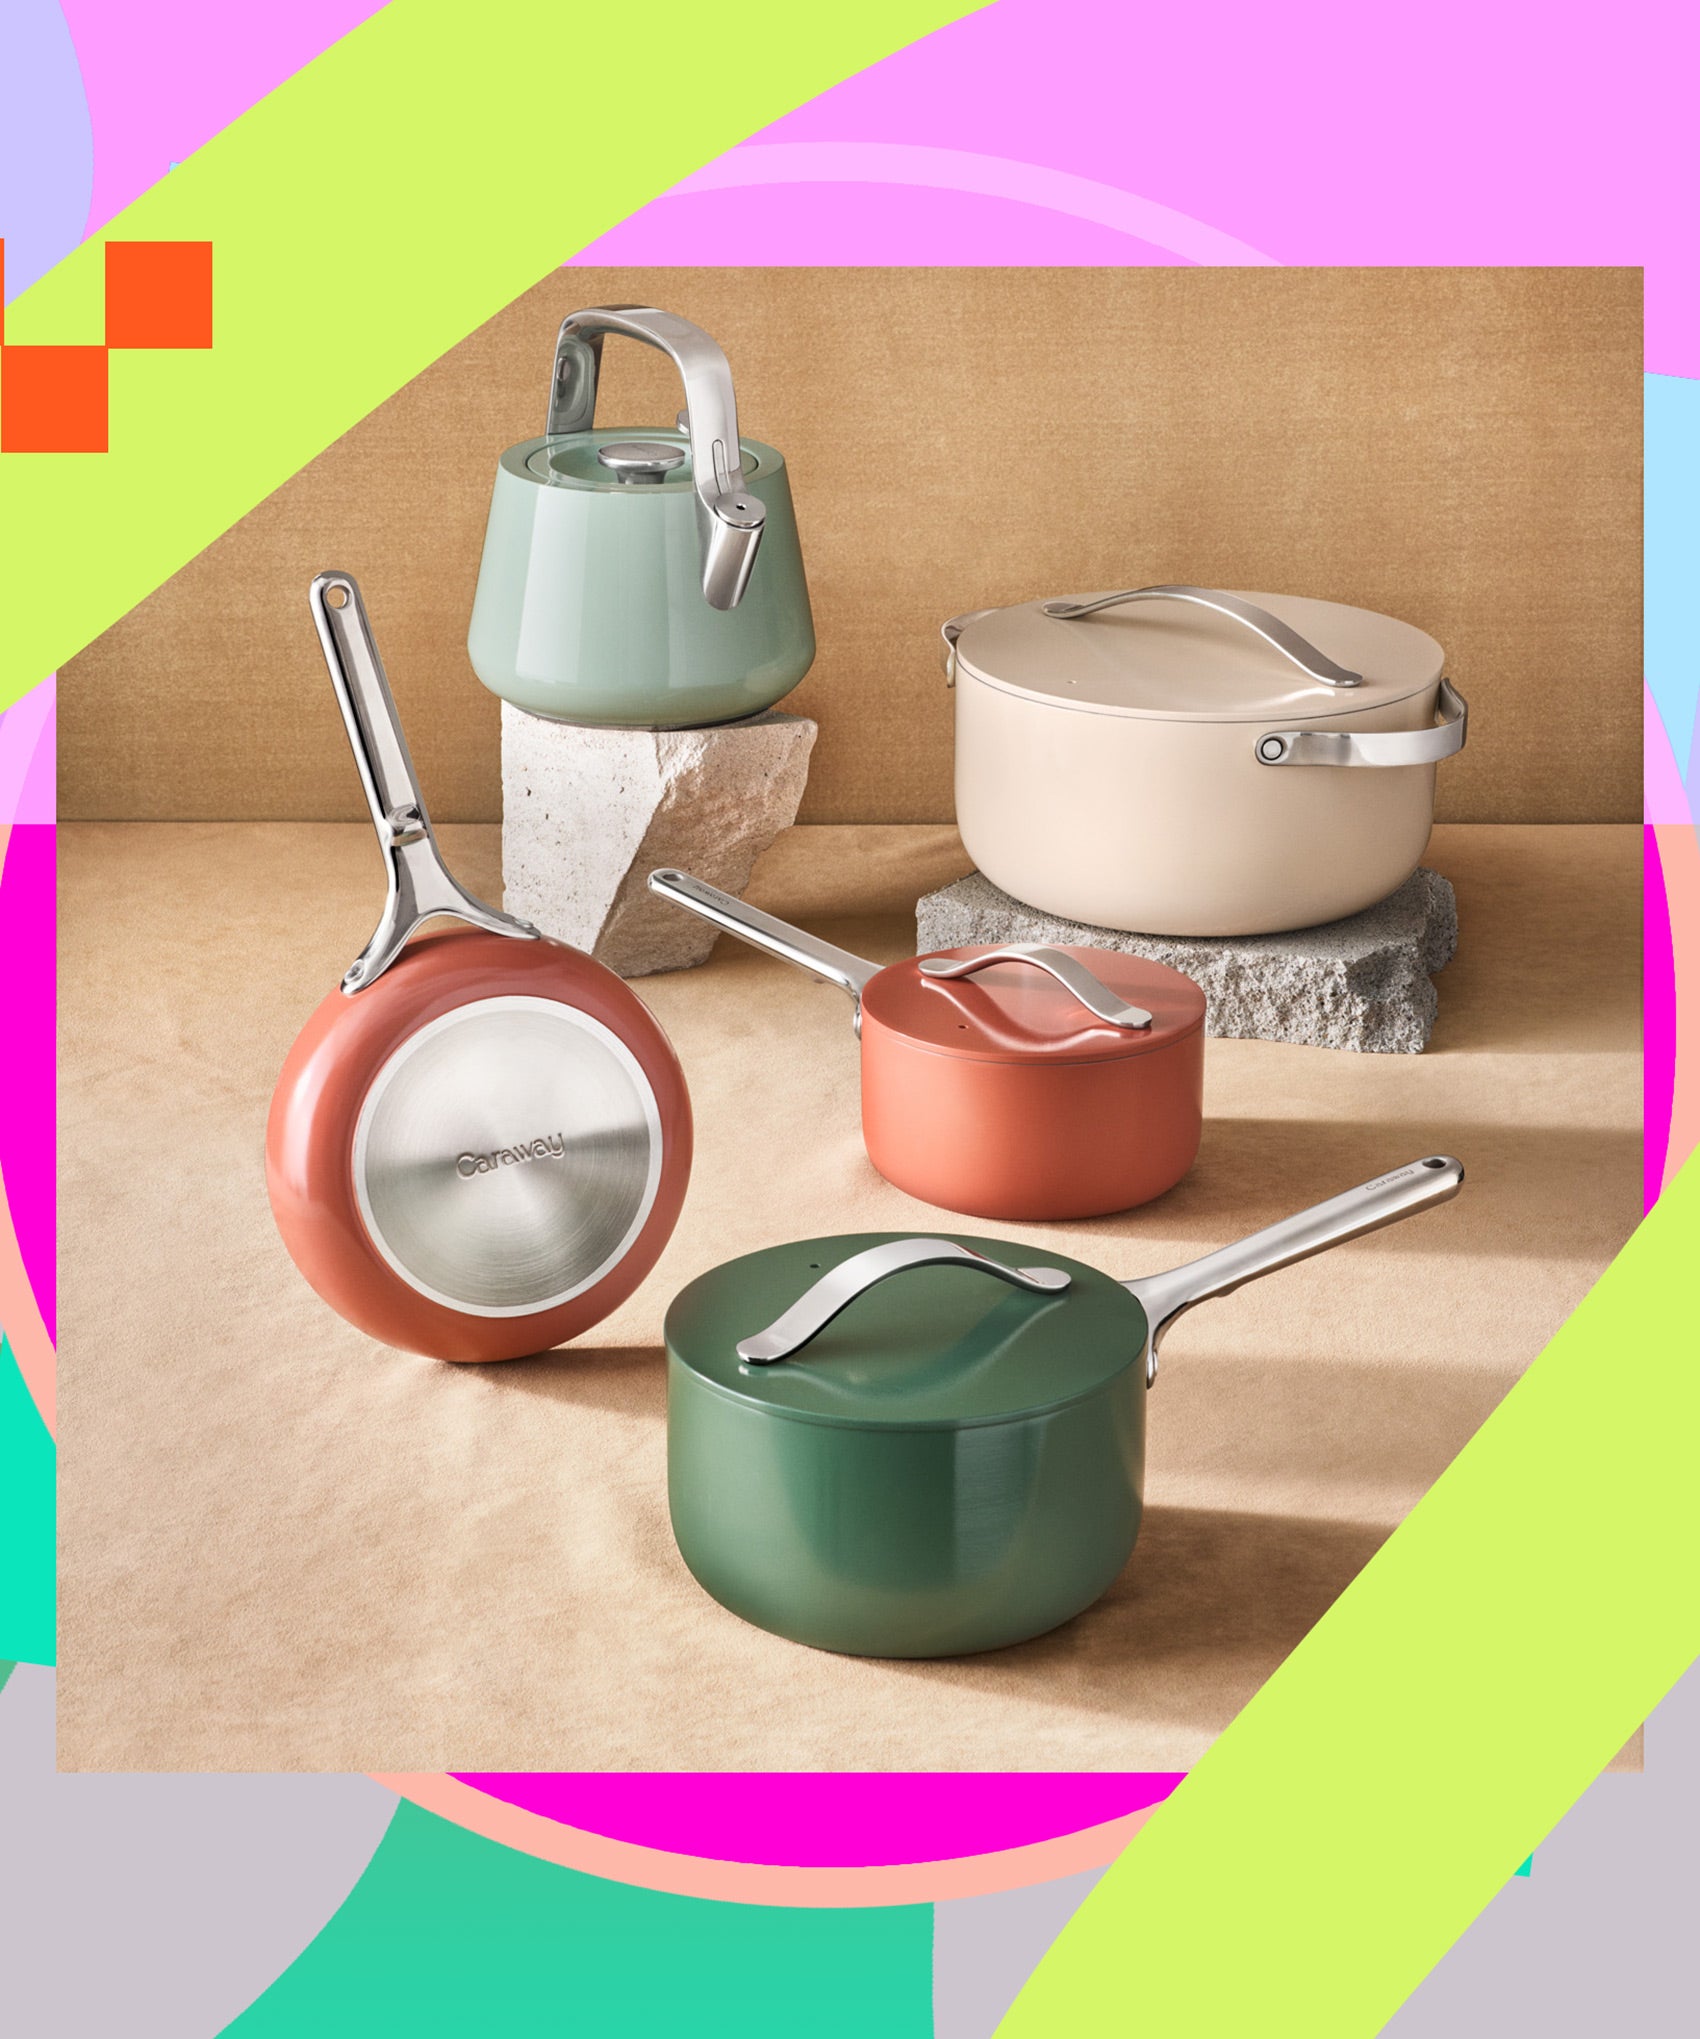 Caraway Now Has a Mini Ceramic Cookware Set